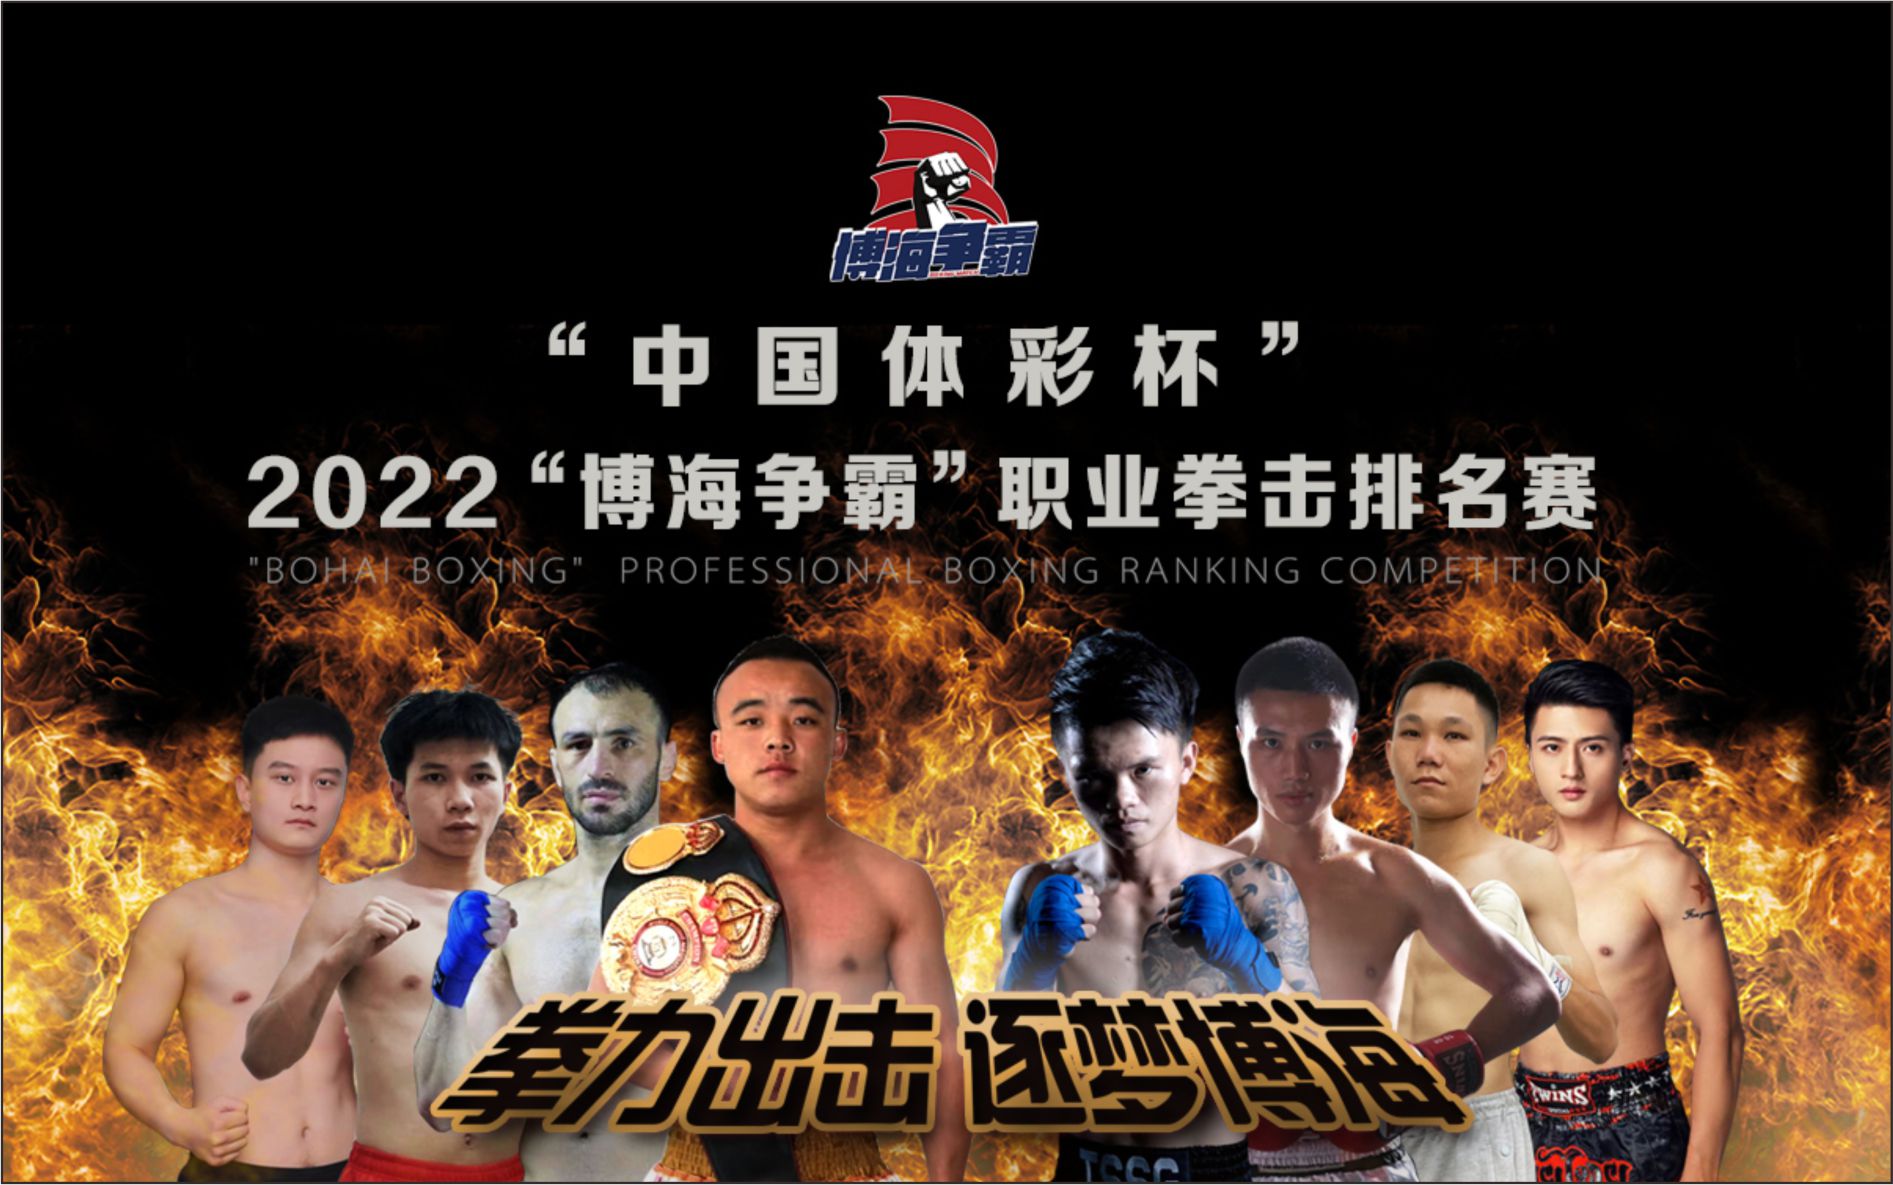 “中国体彩杯”2022“博海争霸”职业拳击排名赛